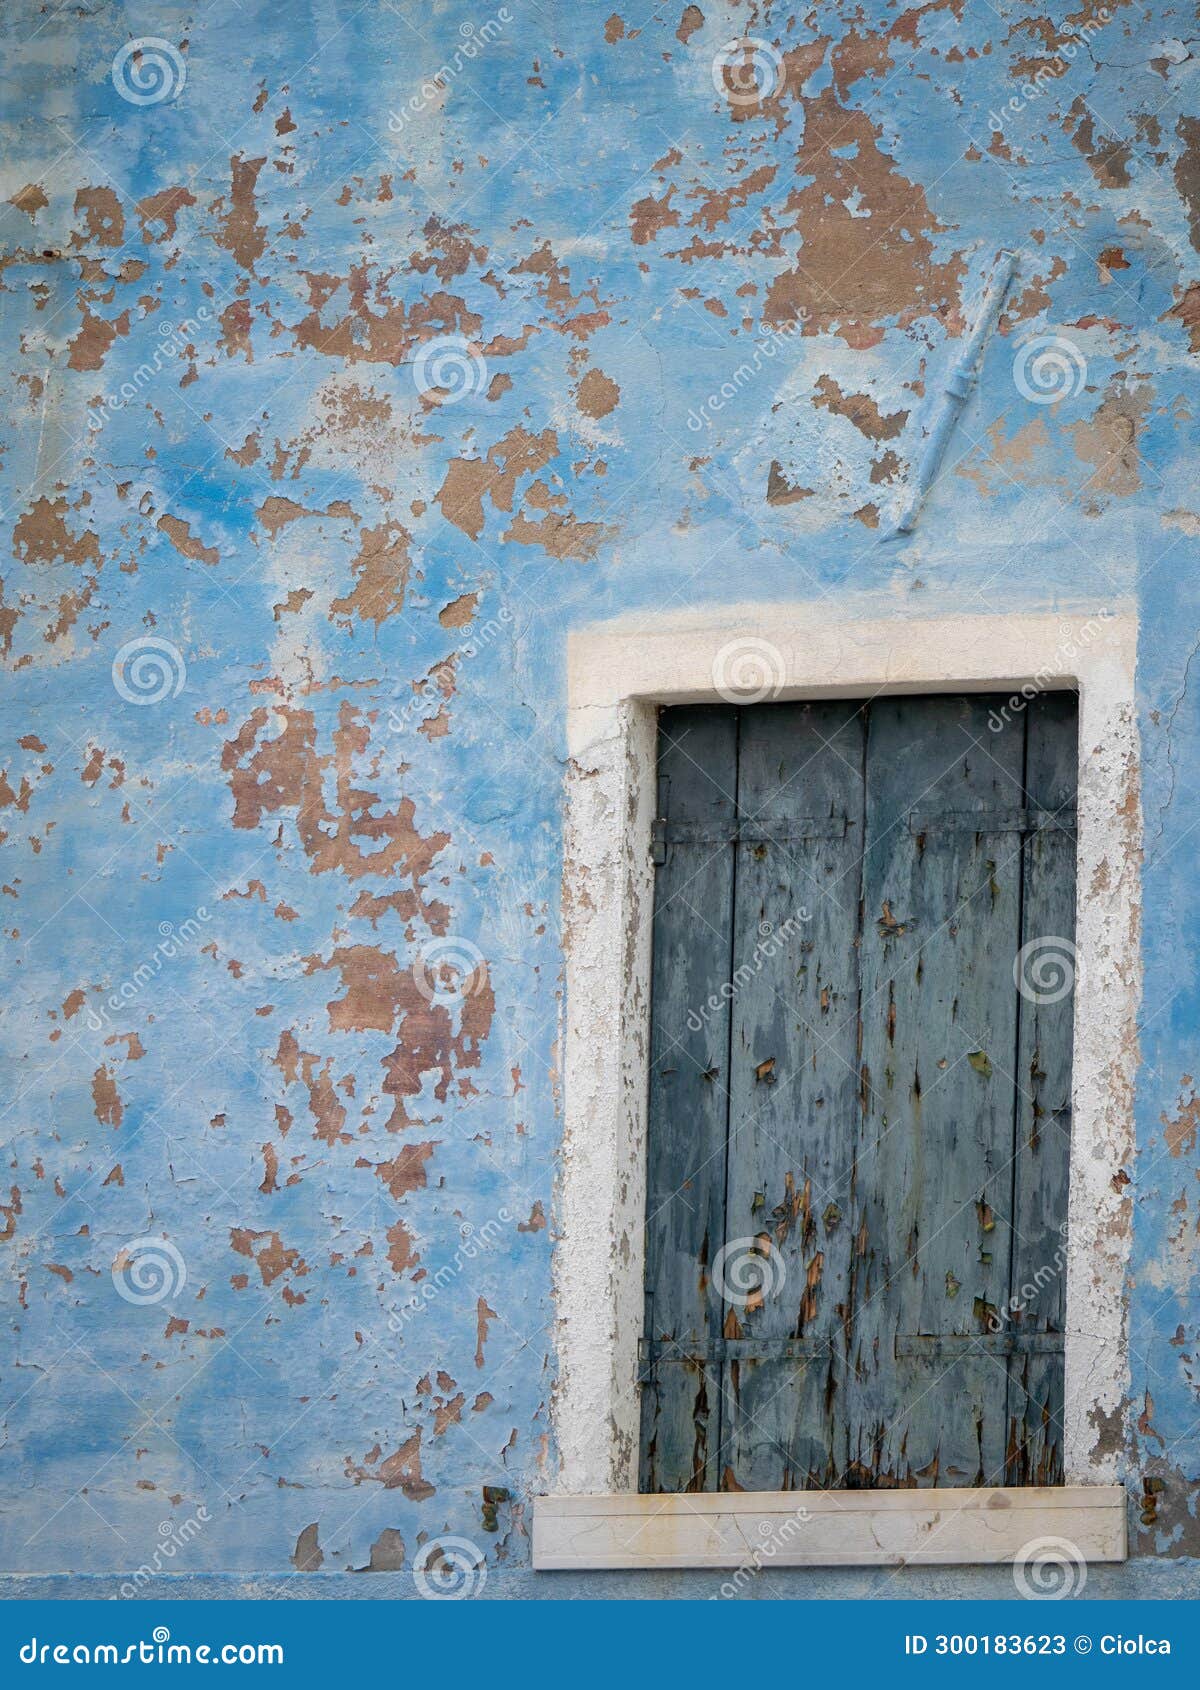 peeled blue window wall